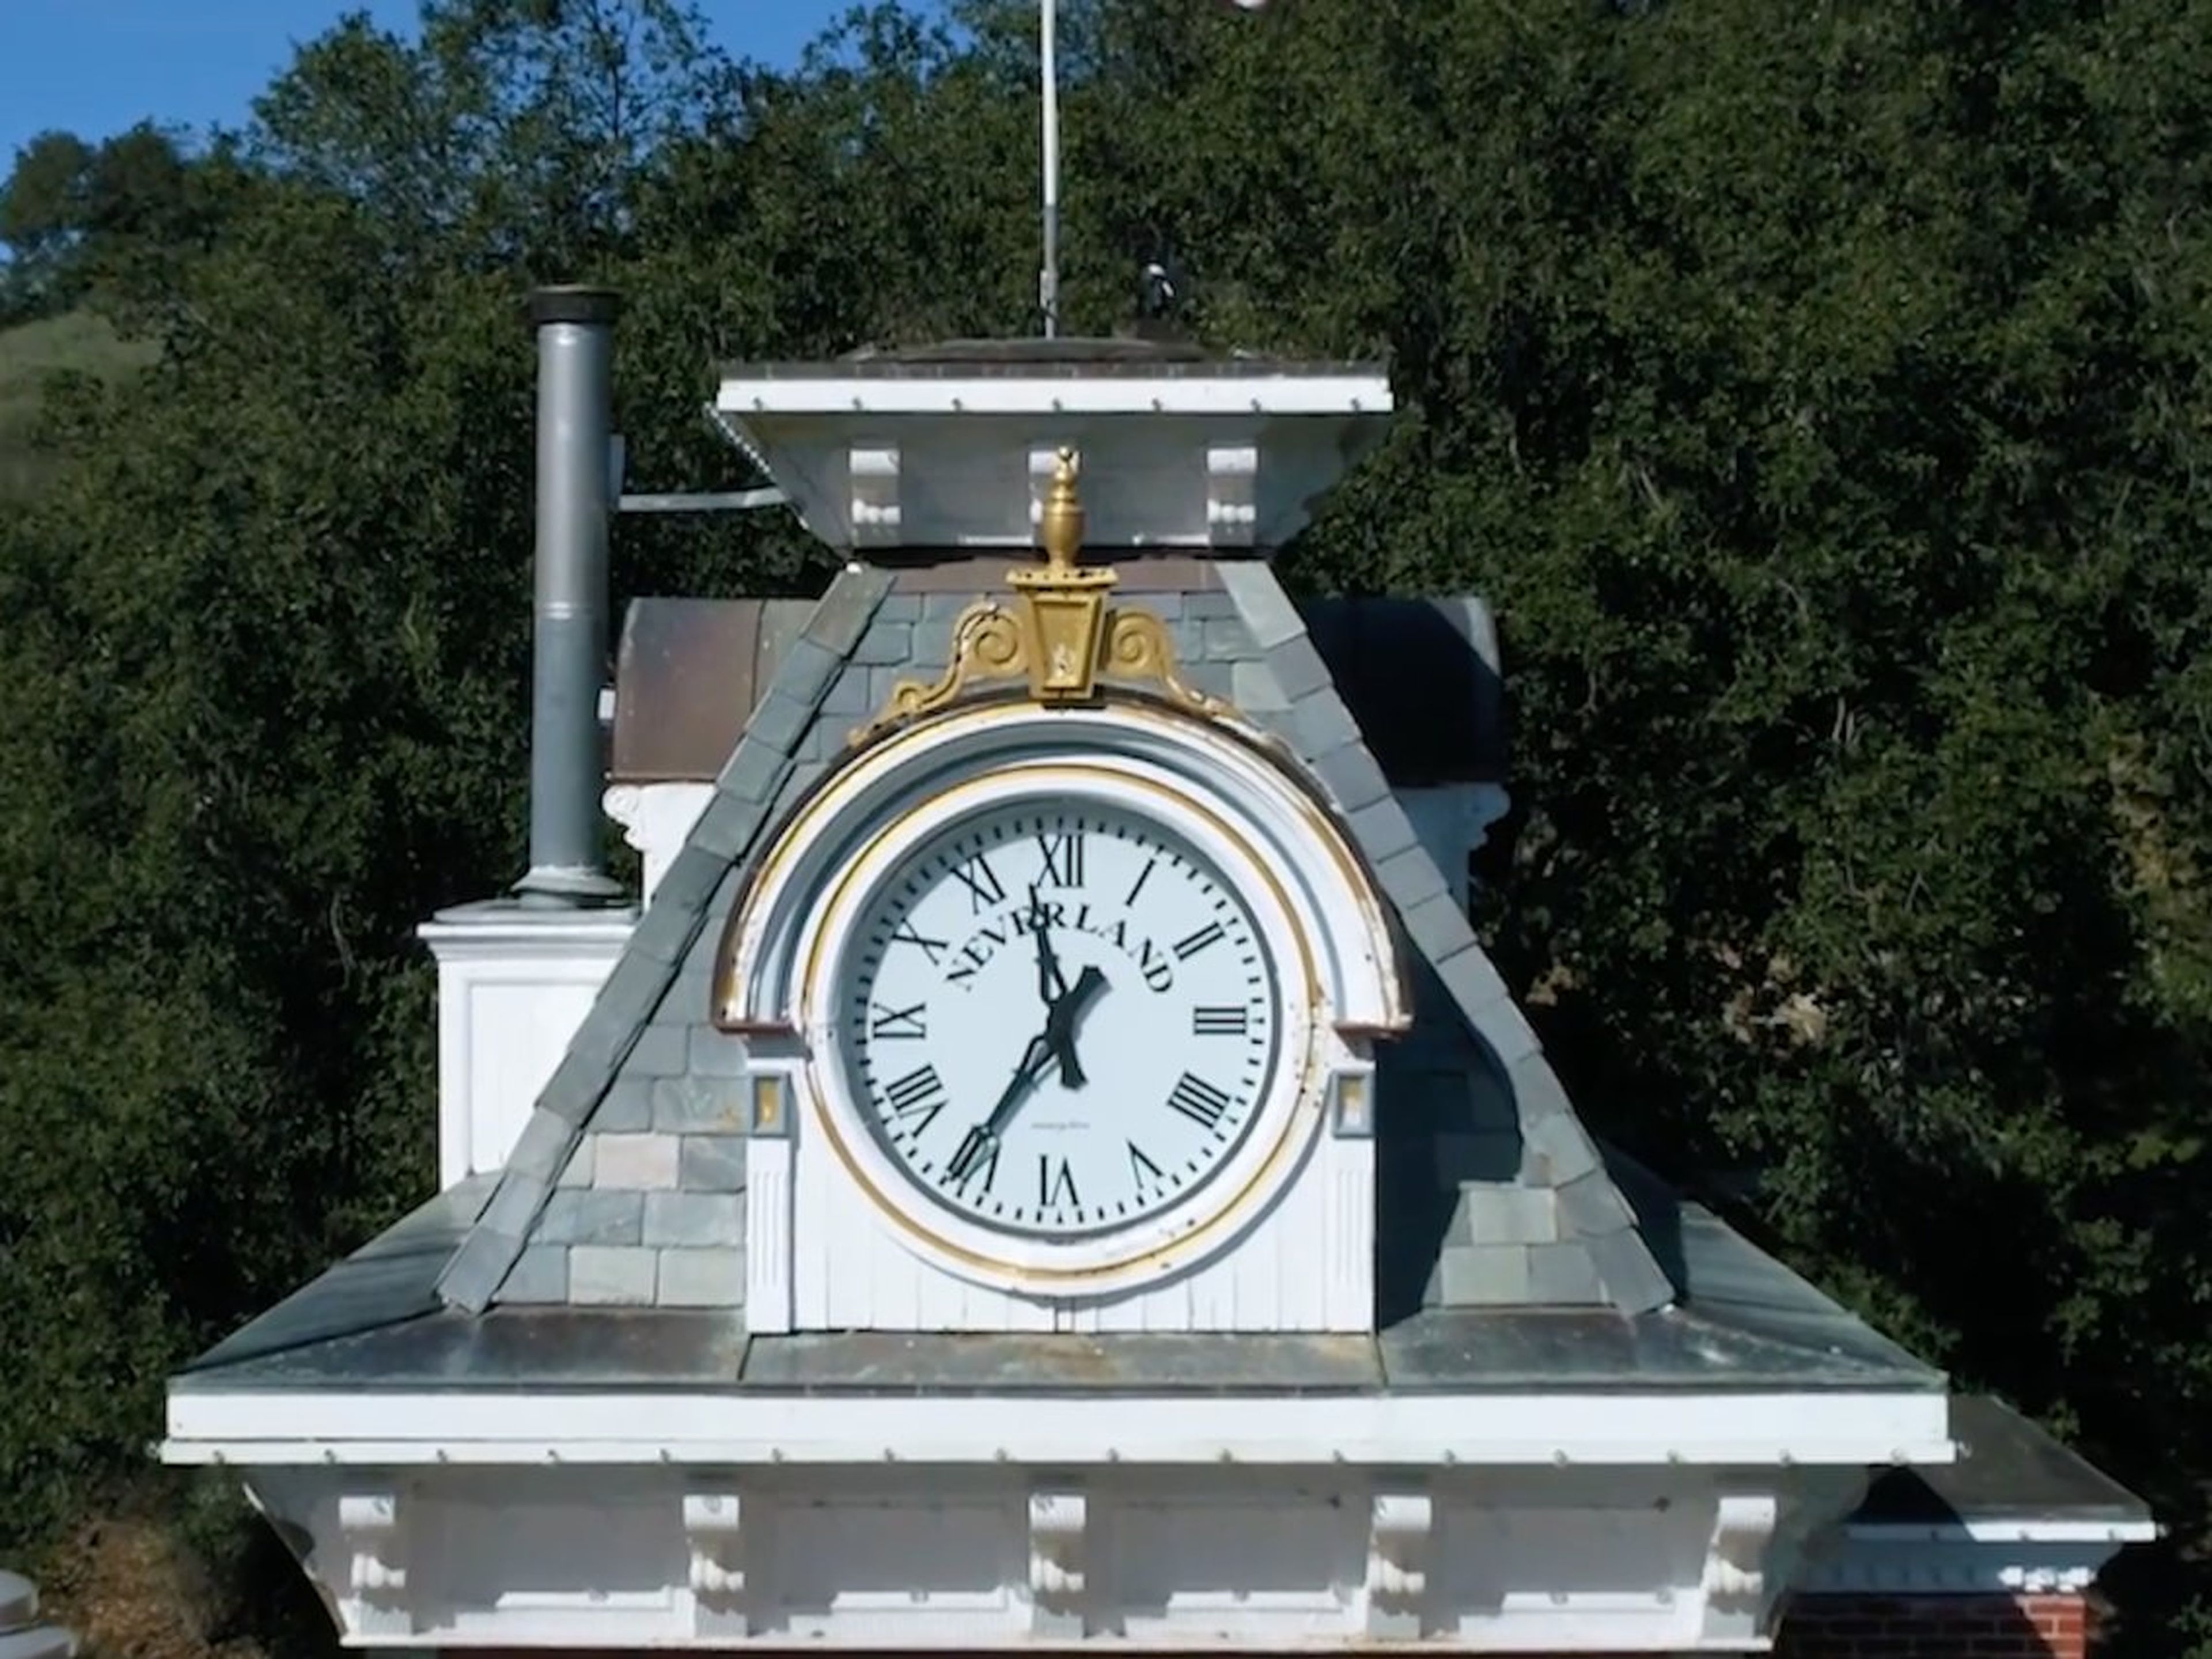 Aquí hay un gran reloj que se encuentra encima de la estación de tren con "NEVERLAND" en grandes letras negras